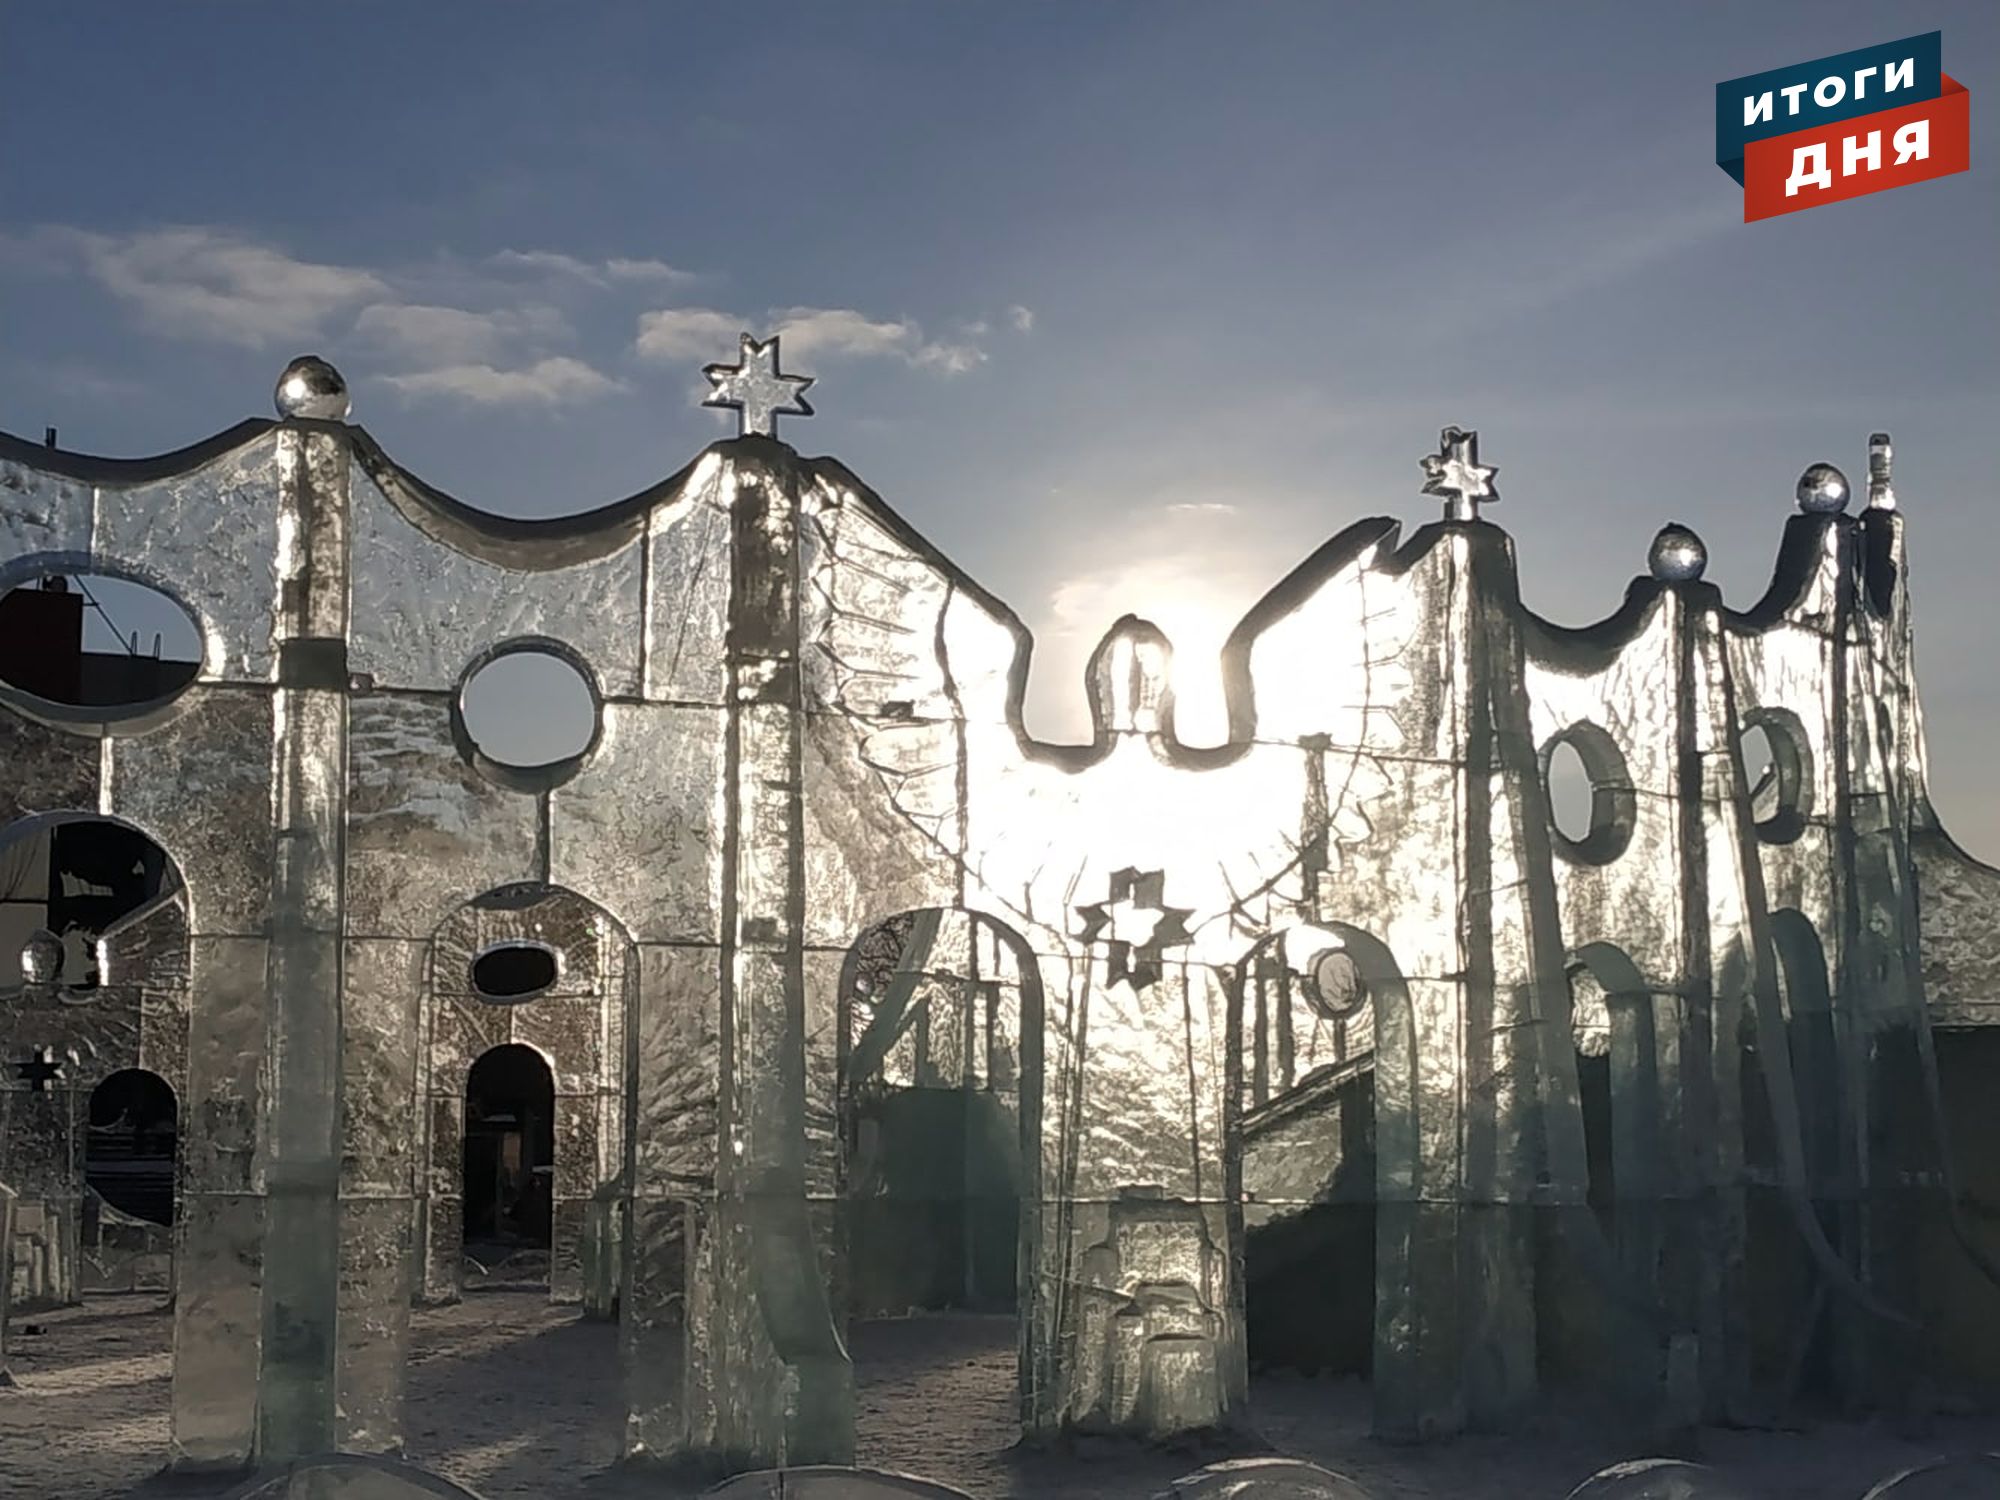 Итоги дня: фестиваль «Удмуртский лёд», попытка украсть икону и водопровод в микрорайоне «Столичный» Ижевска